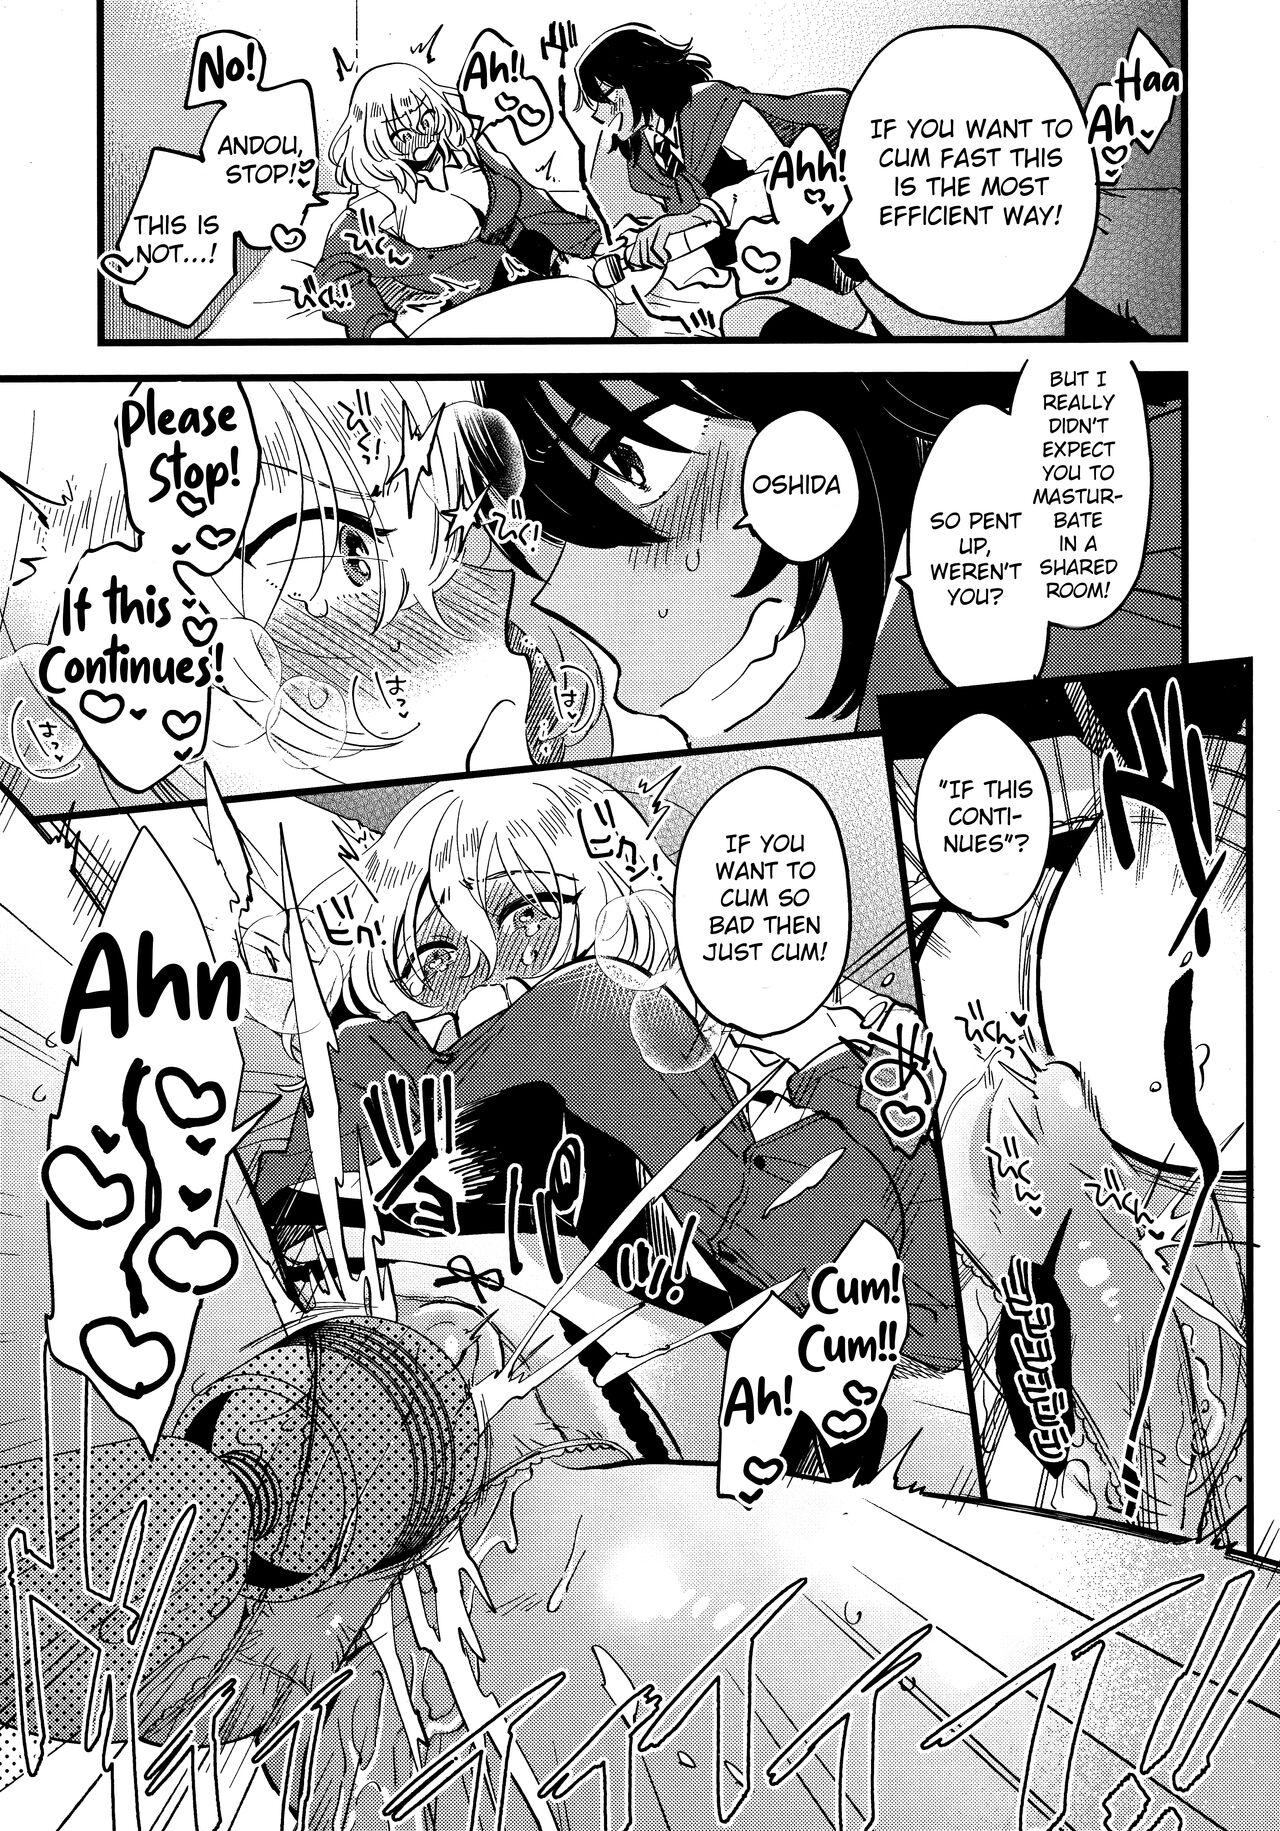 Women Fucking AnOshi, Nakayoku! - Girls und panzer Insertion - Page 10